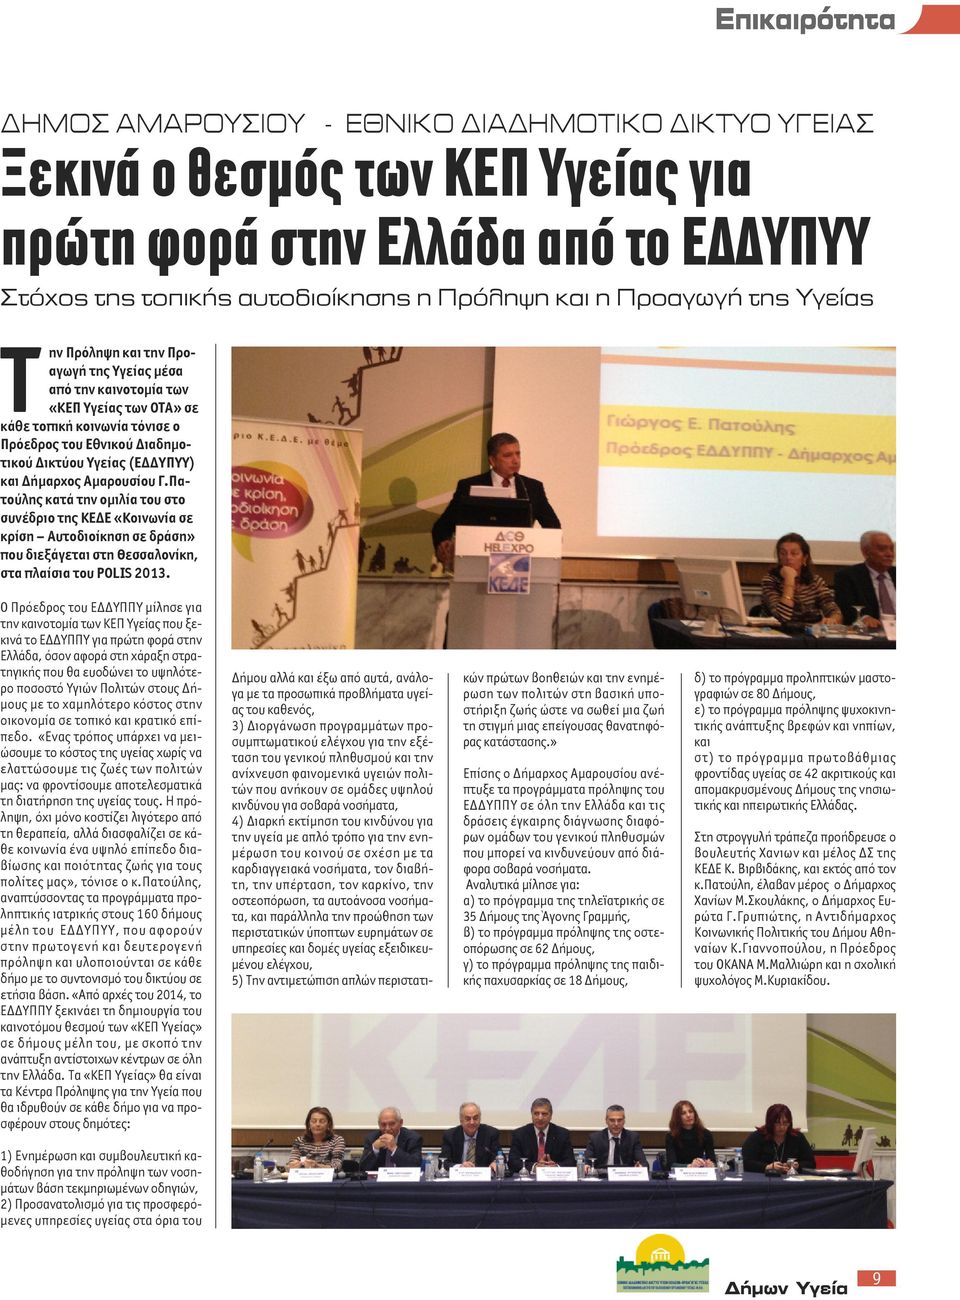 Αμαρουσίου Γ.Πατούλης κατά την ομιλία του στο συνέδριο της ΚΕΔΕ «Κοινωνία σε κρίση Αυτοδιοίκηση σε δράση» που διεξάγεται στη Θεσσαλονίκη, στα πλαίσια του PoLIS 2013.